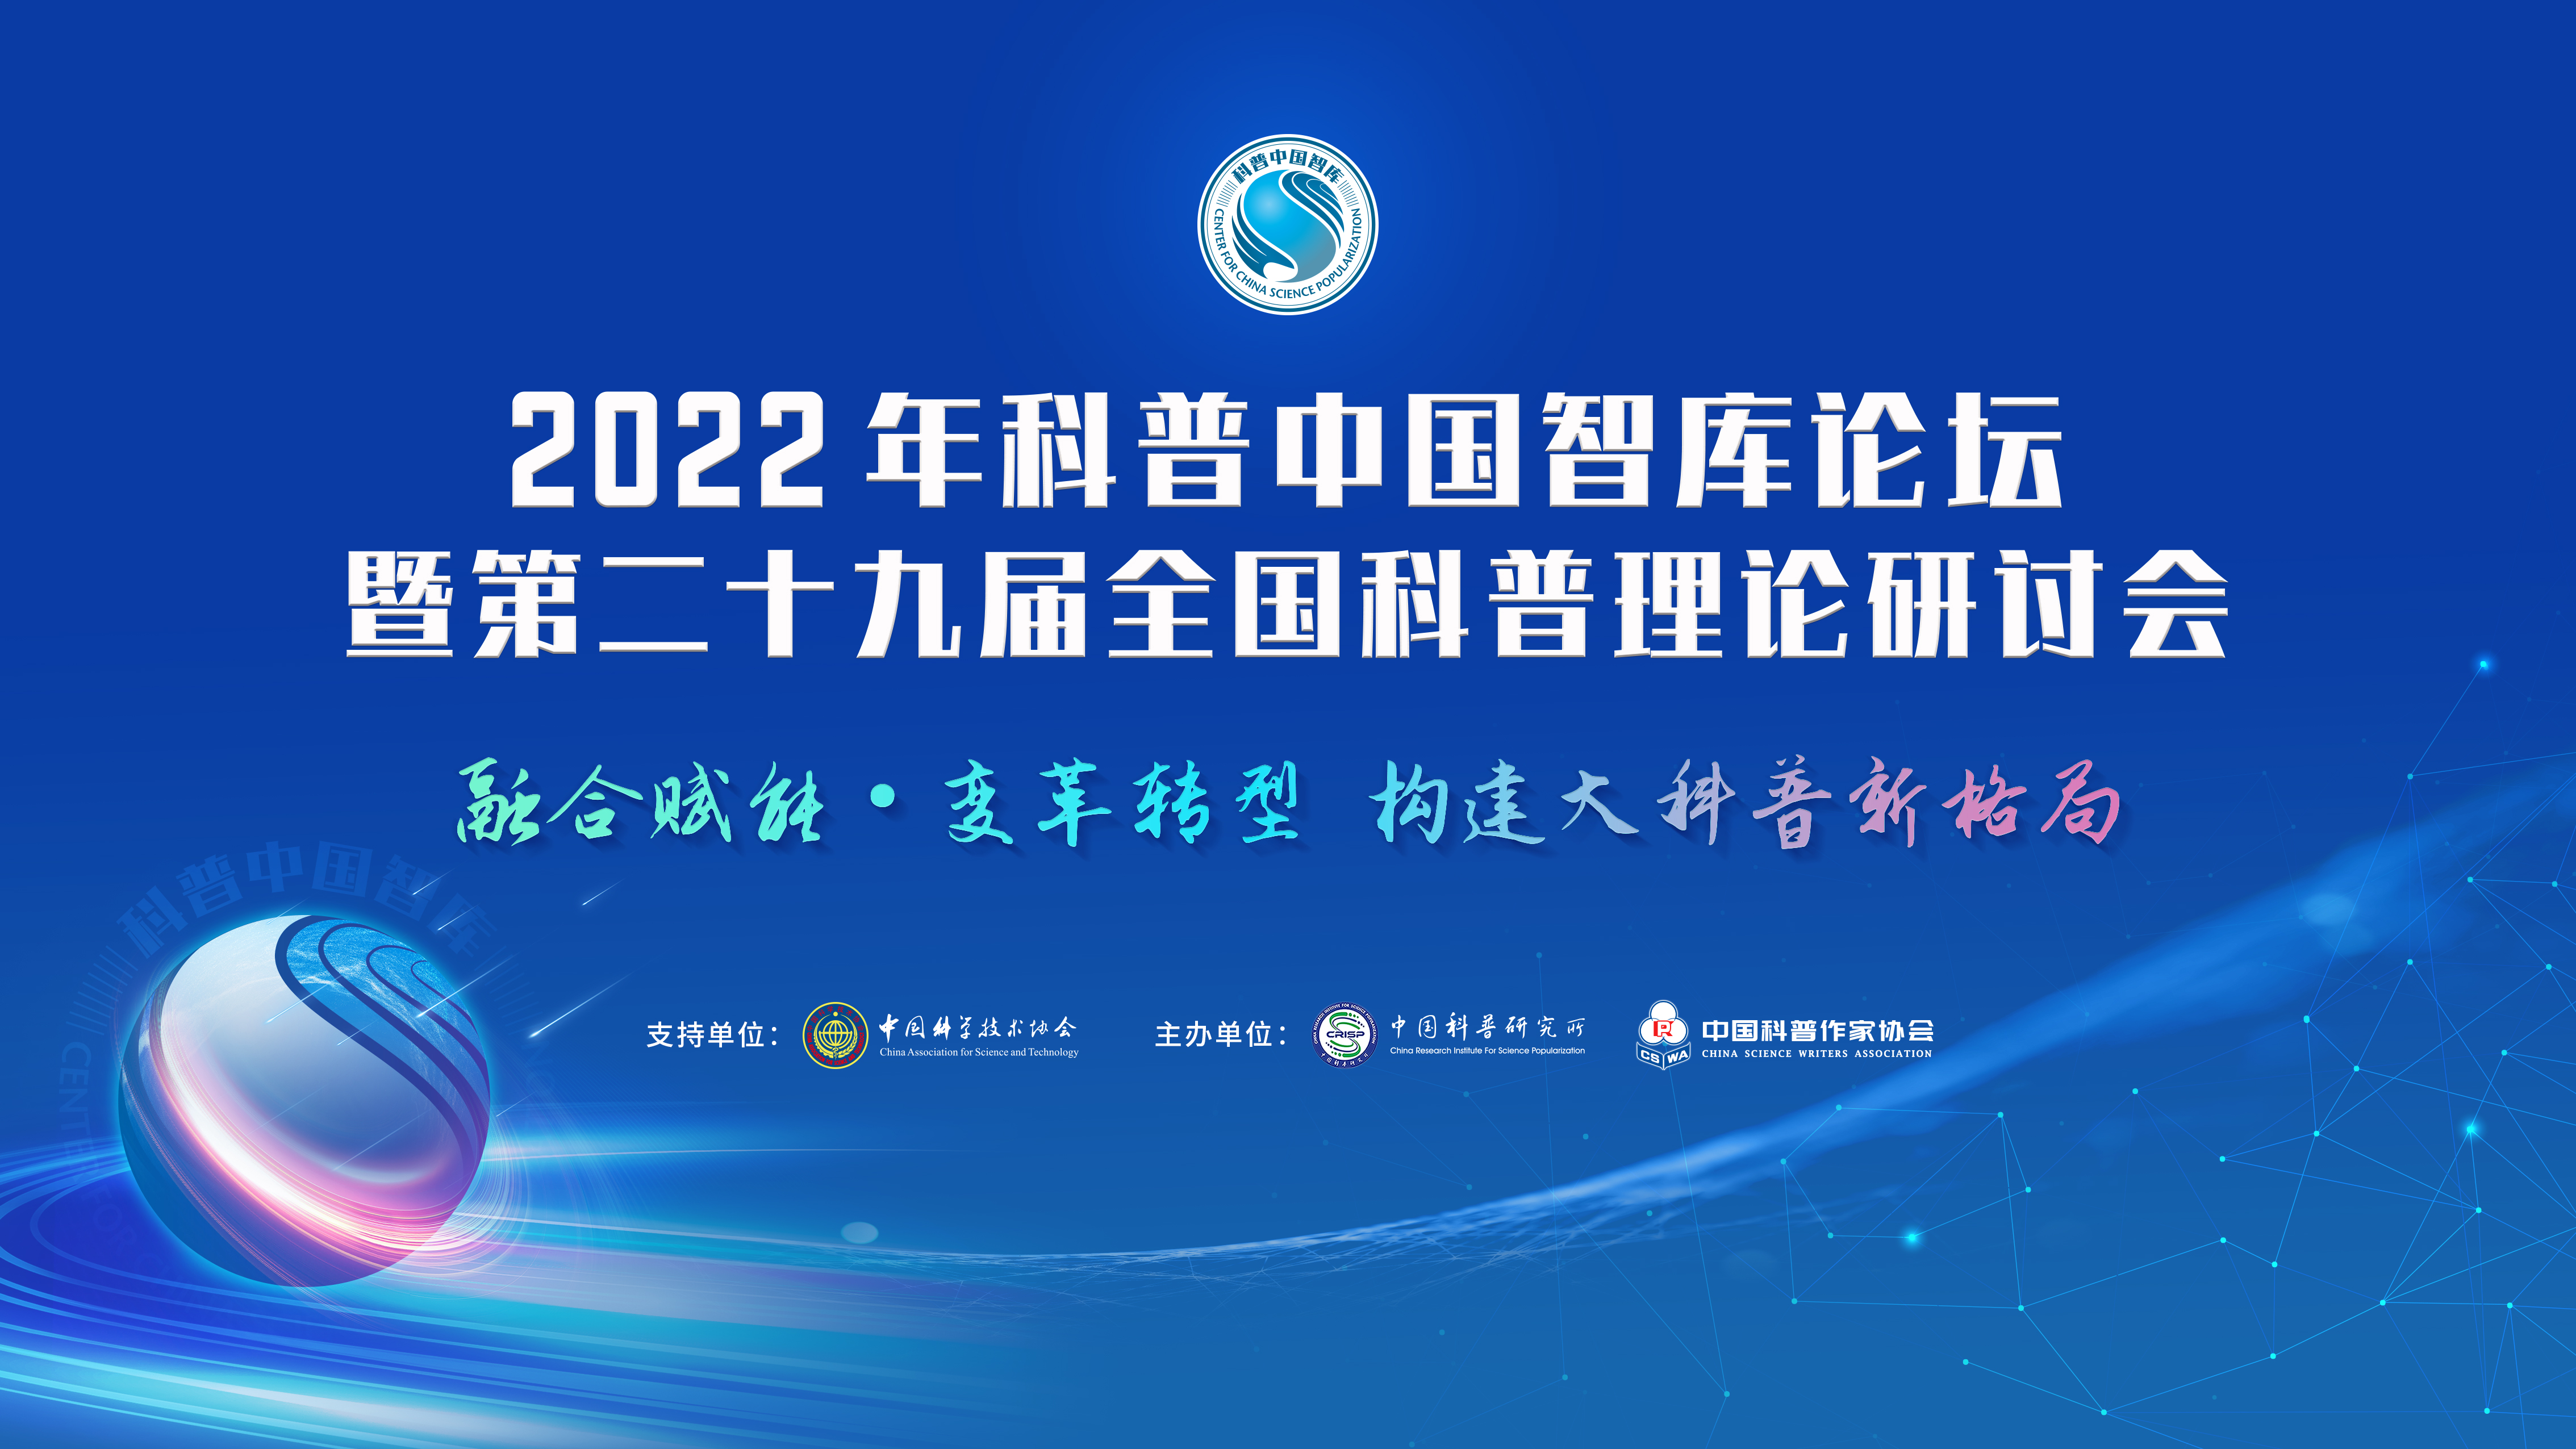 2022年科普中國智庫論壇暨第二十九屆全國科普理論研討會將于9月29日在京舉辦